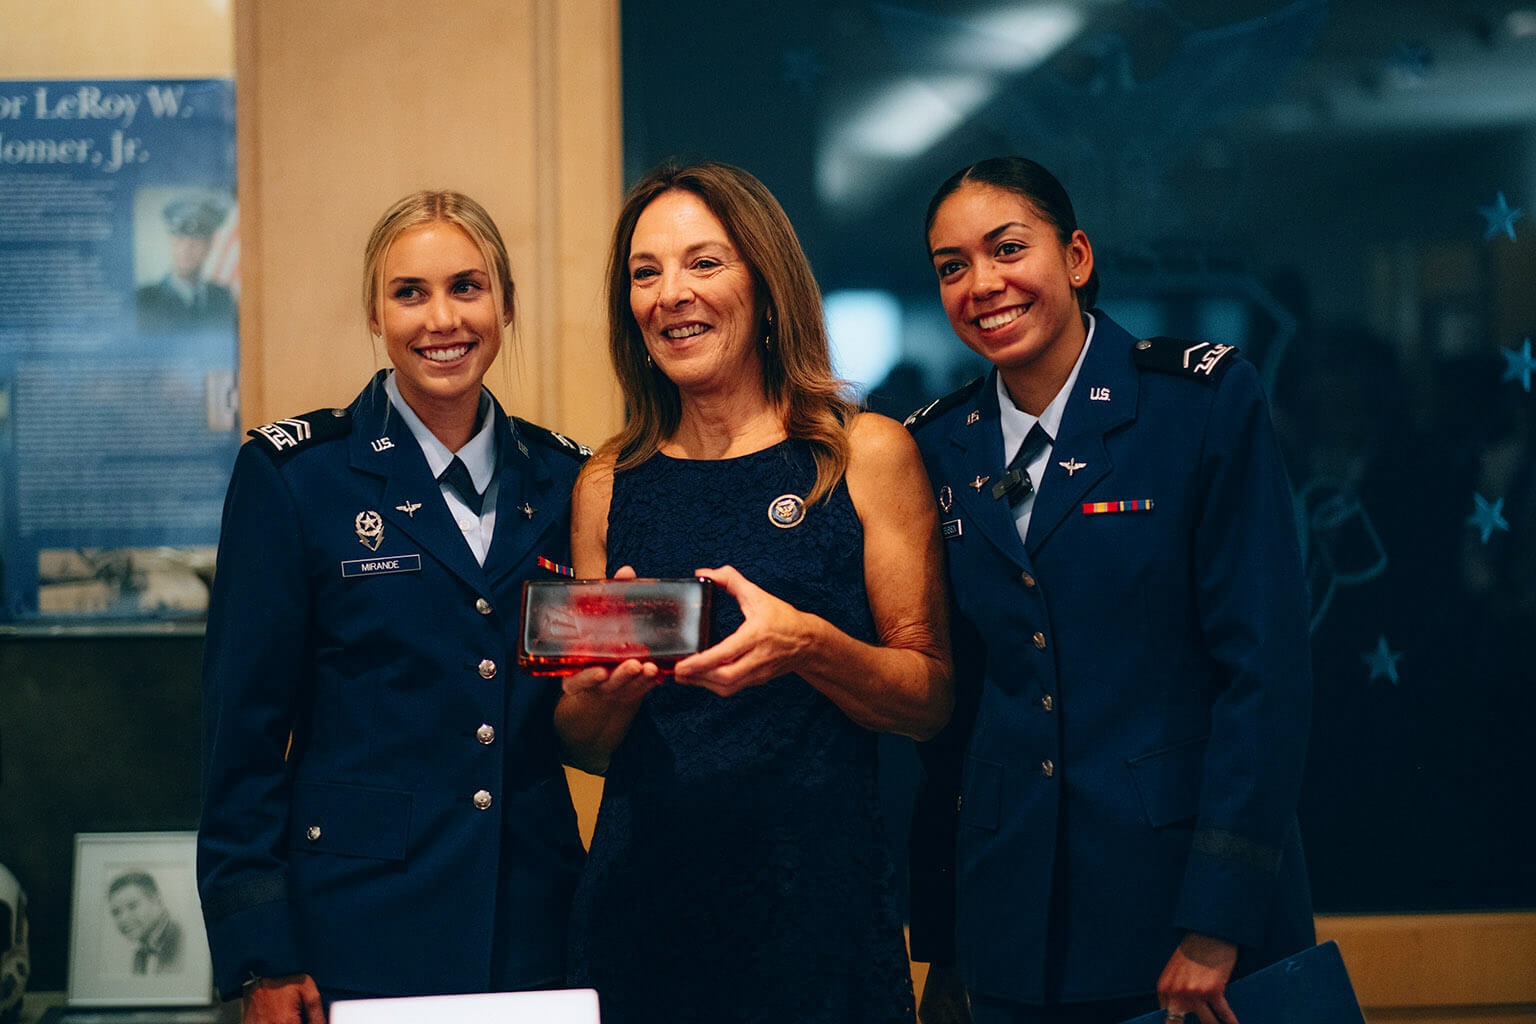 U.S. Air Force Academy Cadet 3rd Class Lauren Mirande and Cadet 3rd Class Jocelynn Stevenson greet Valerie Nessel